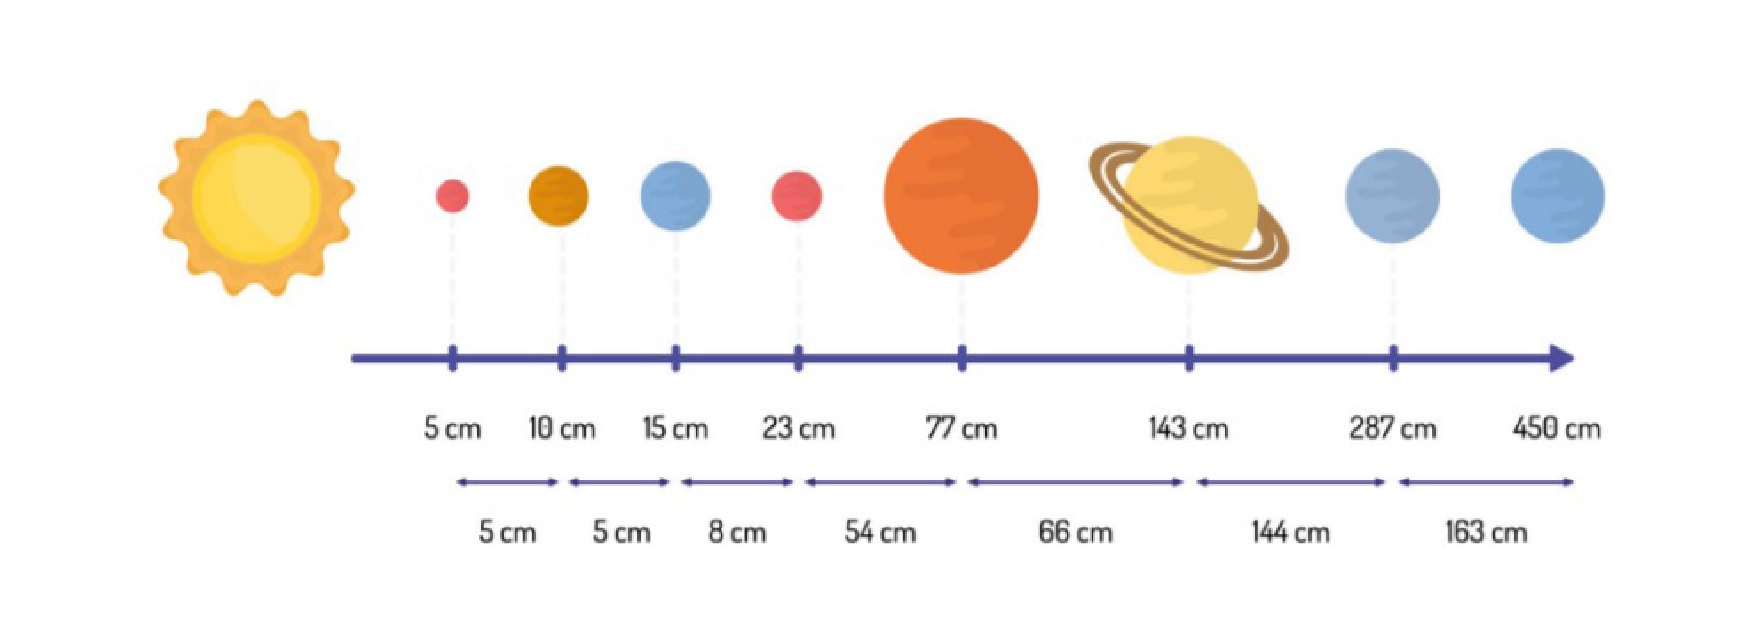 Schemat ułożenia planet.jpg